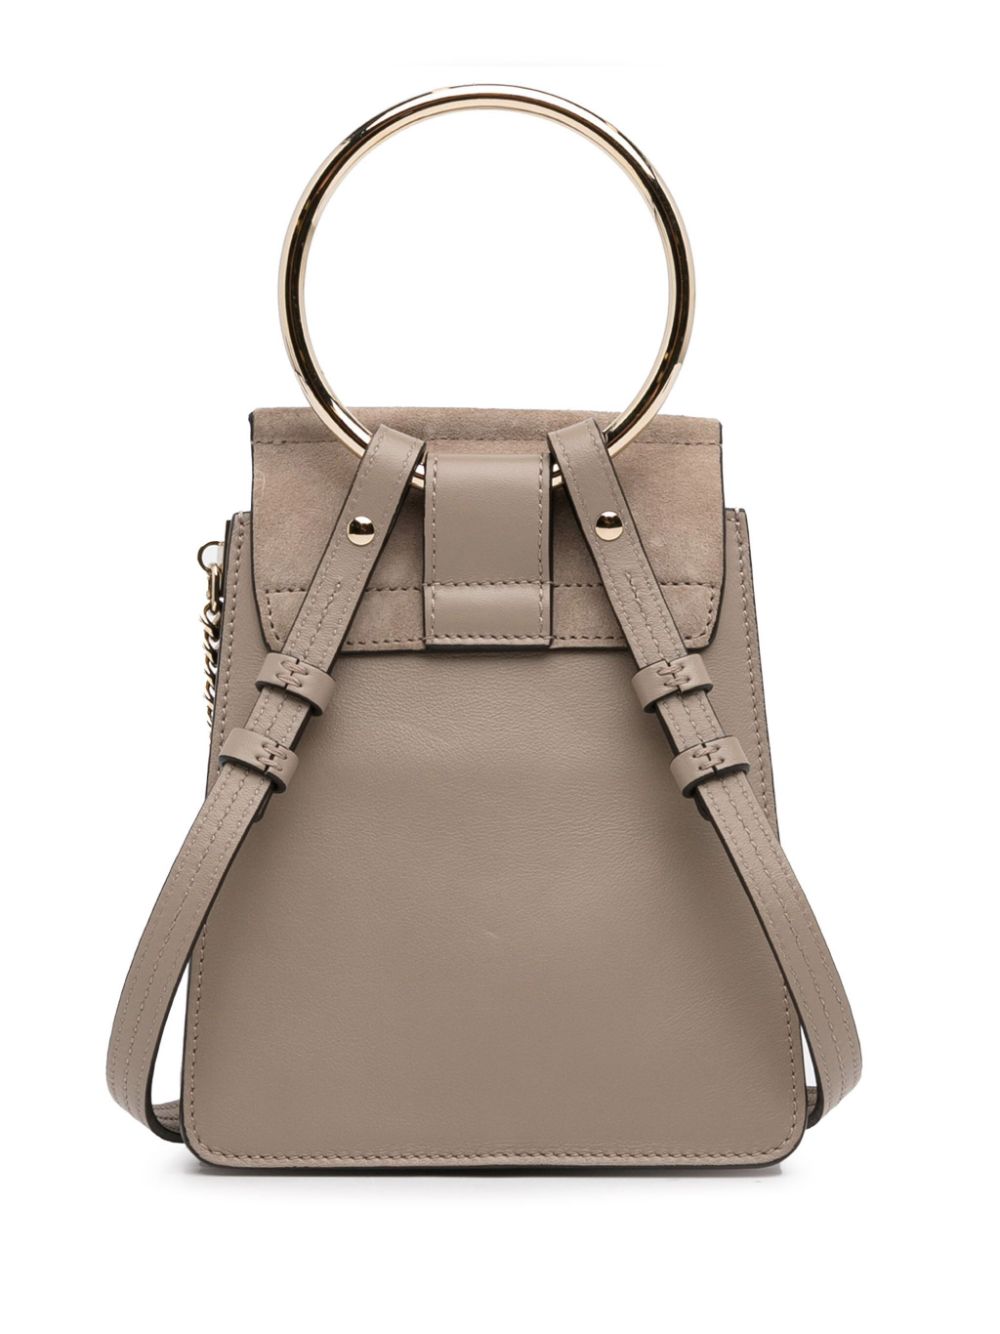 Chloé Pre-Owned 2017 Mini Faye Bracelet Bag satchel - Bruin